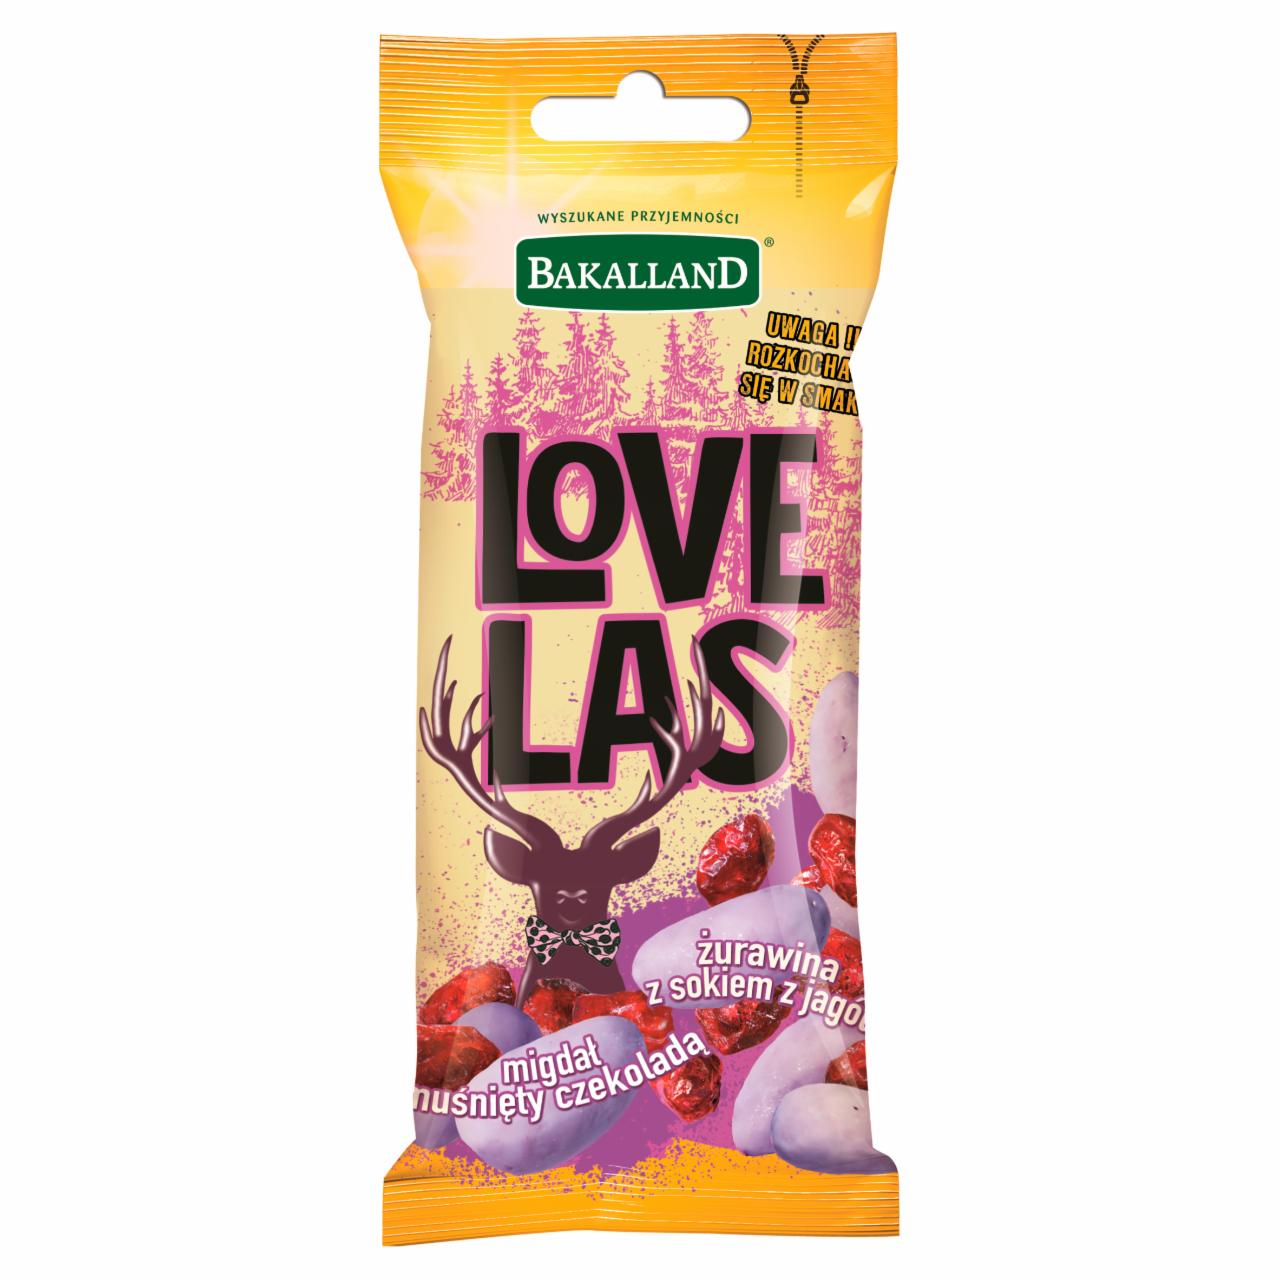 Zdjęcia - Bakalland Love Las Mieszanka żurawiny z sokiem z jagód i migdałów w białej czekoladzie 50 g